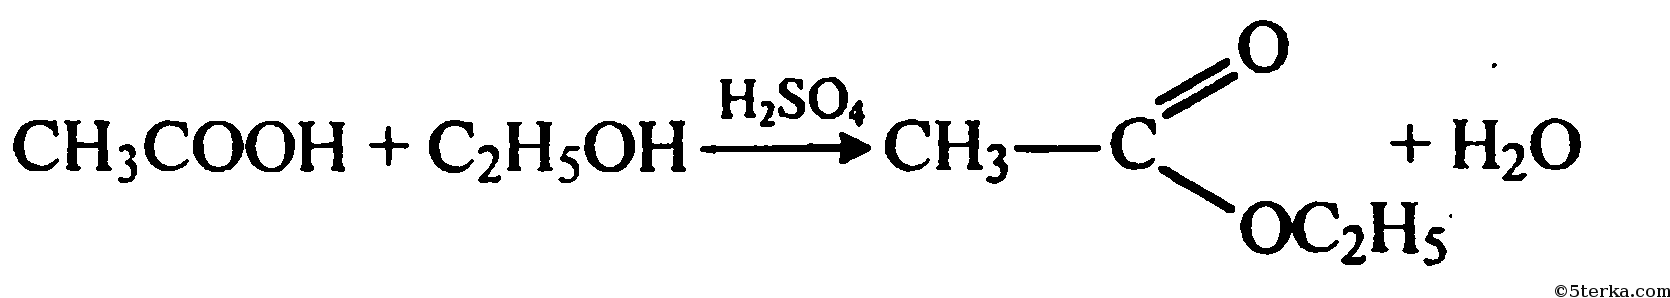 Превращение этаналь этановая кислота. Окисление метанола на Медном катализаторе. Уксусный альдегид и гидроксид меди 2. Уксусный альдегид плюс гидроксид меди 2.